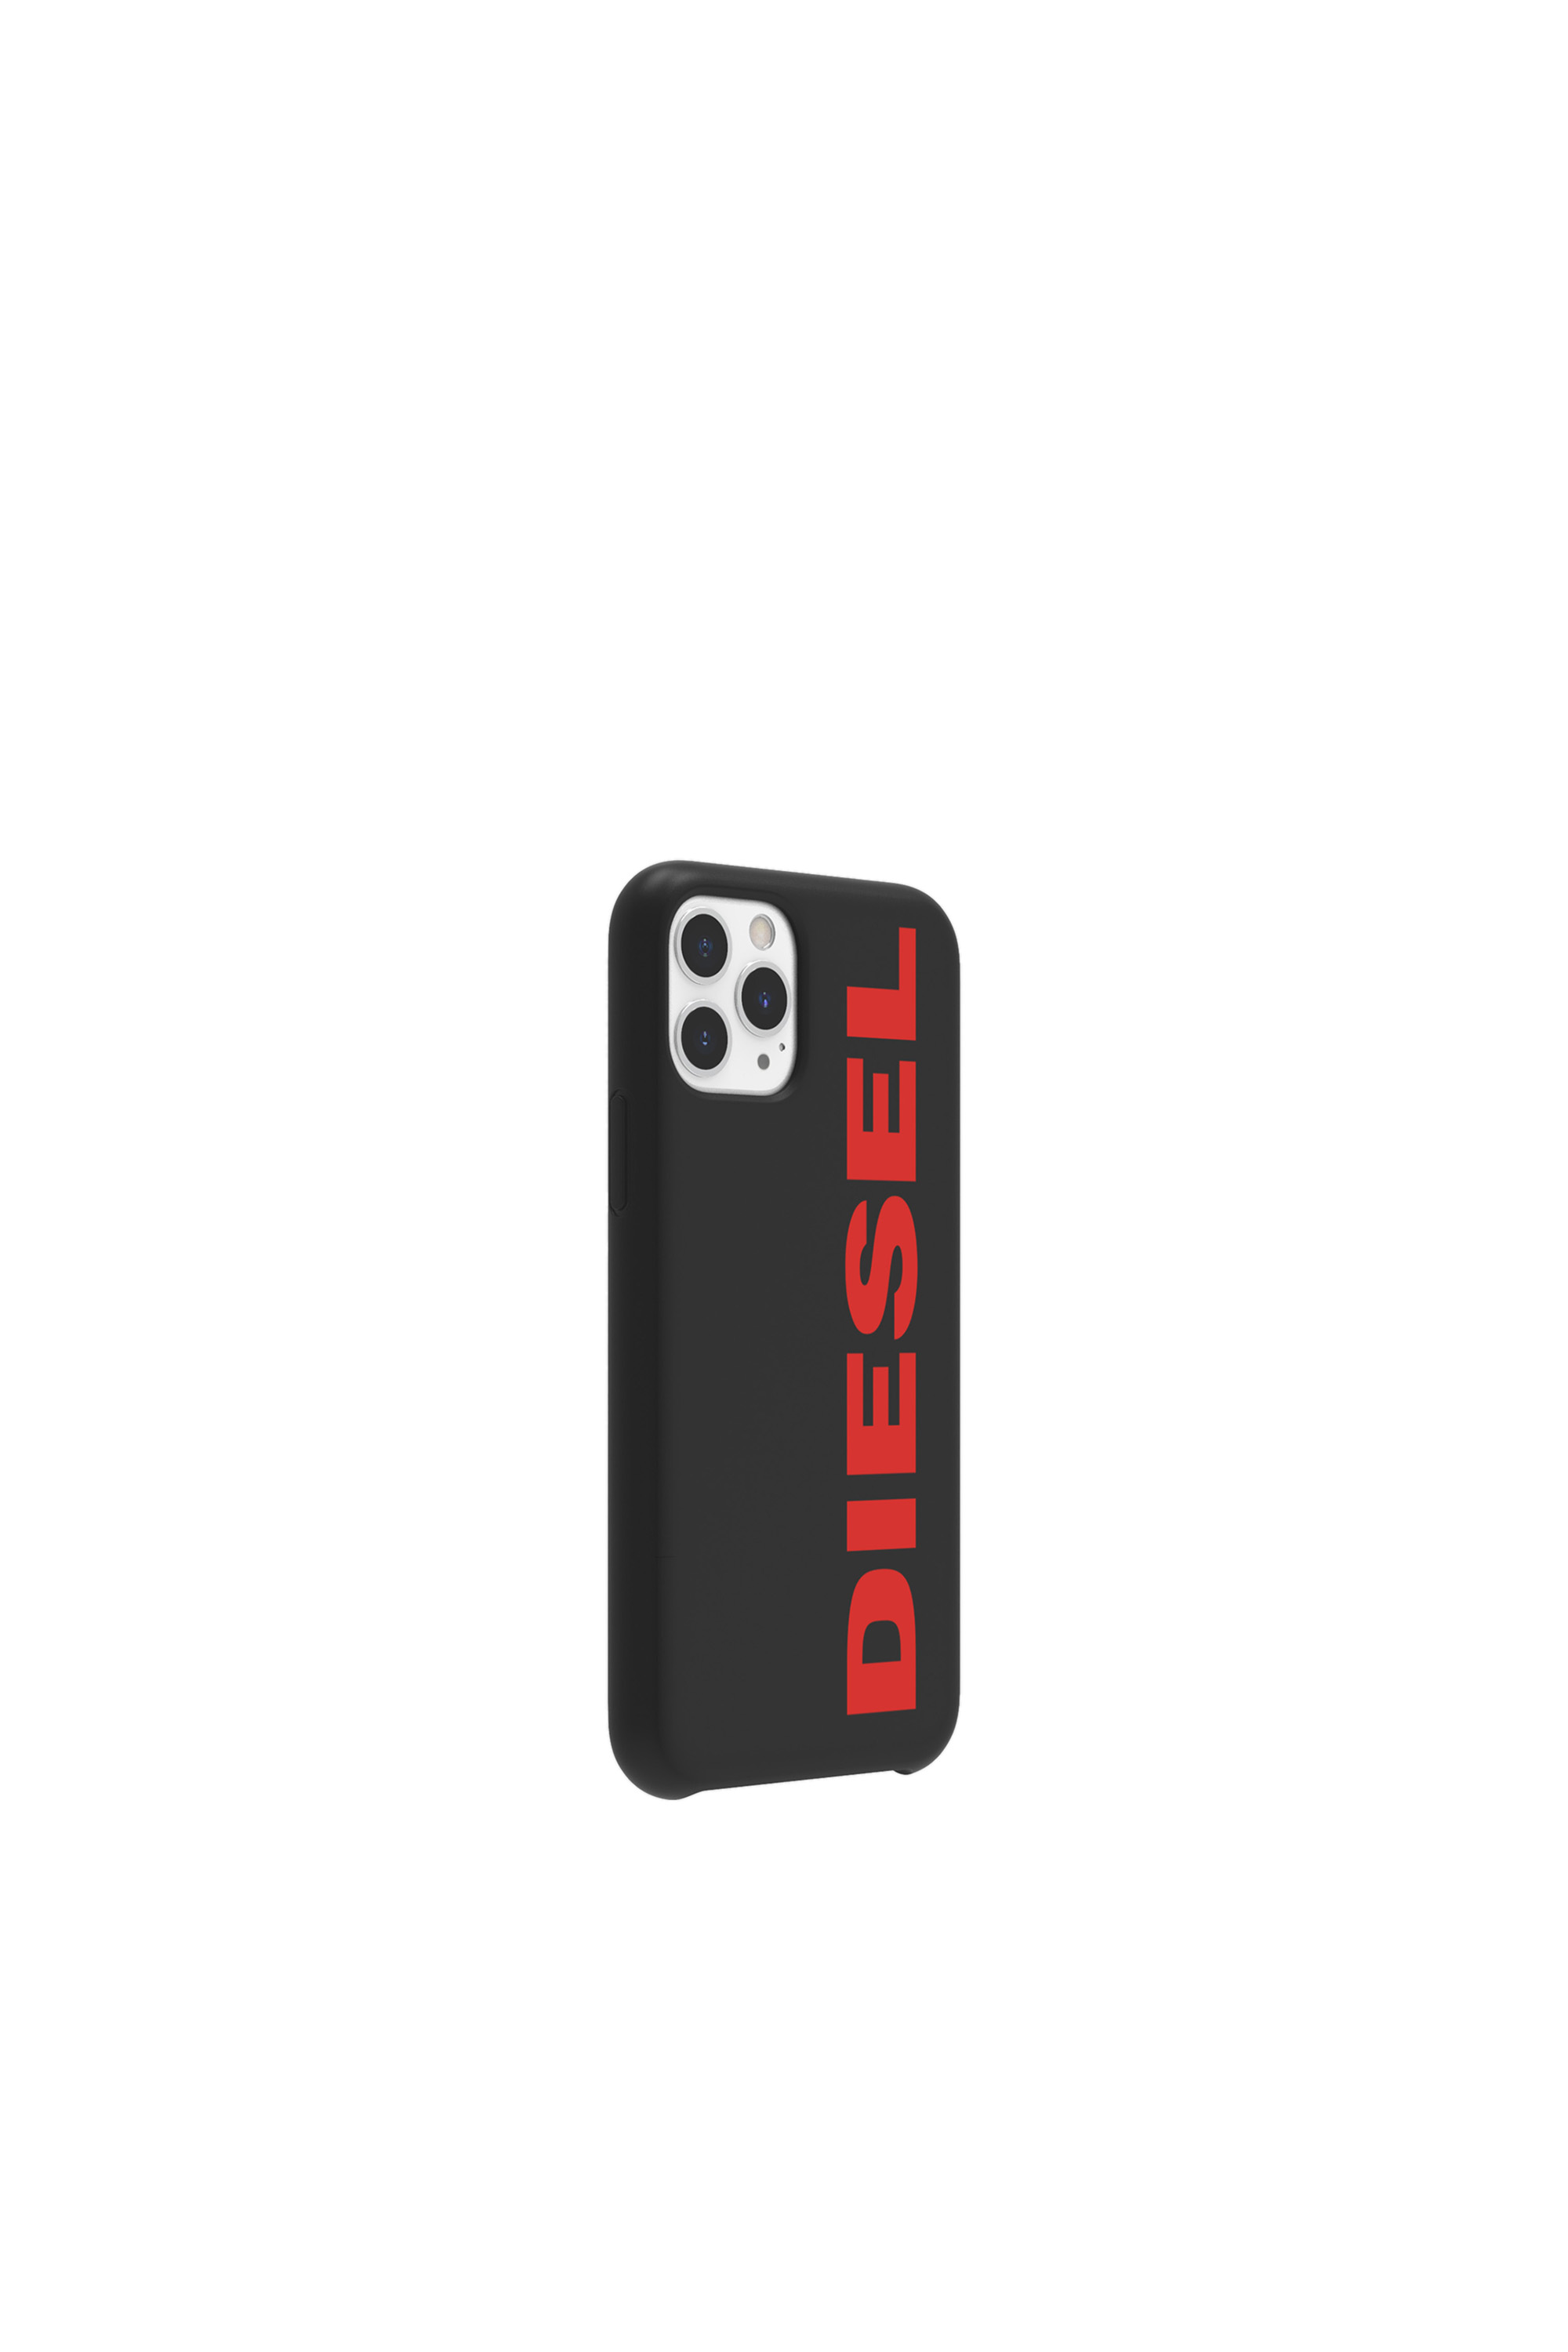 Diesel - DIPH-028-STBR, Black/Red - Image 4